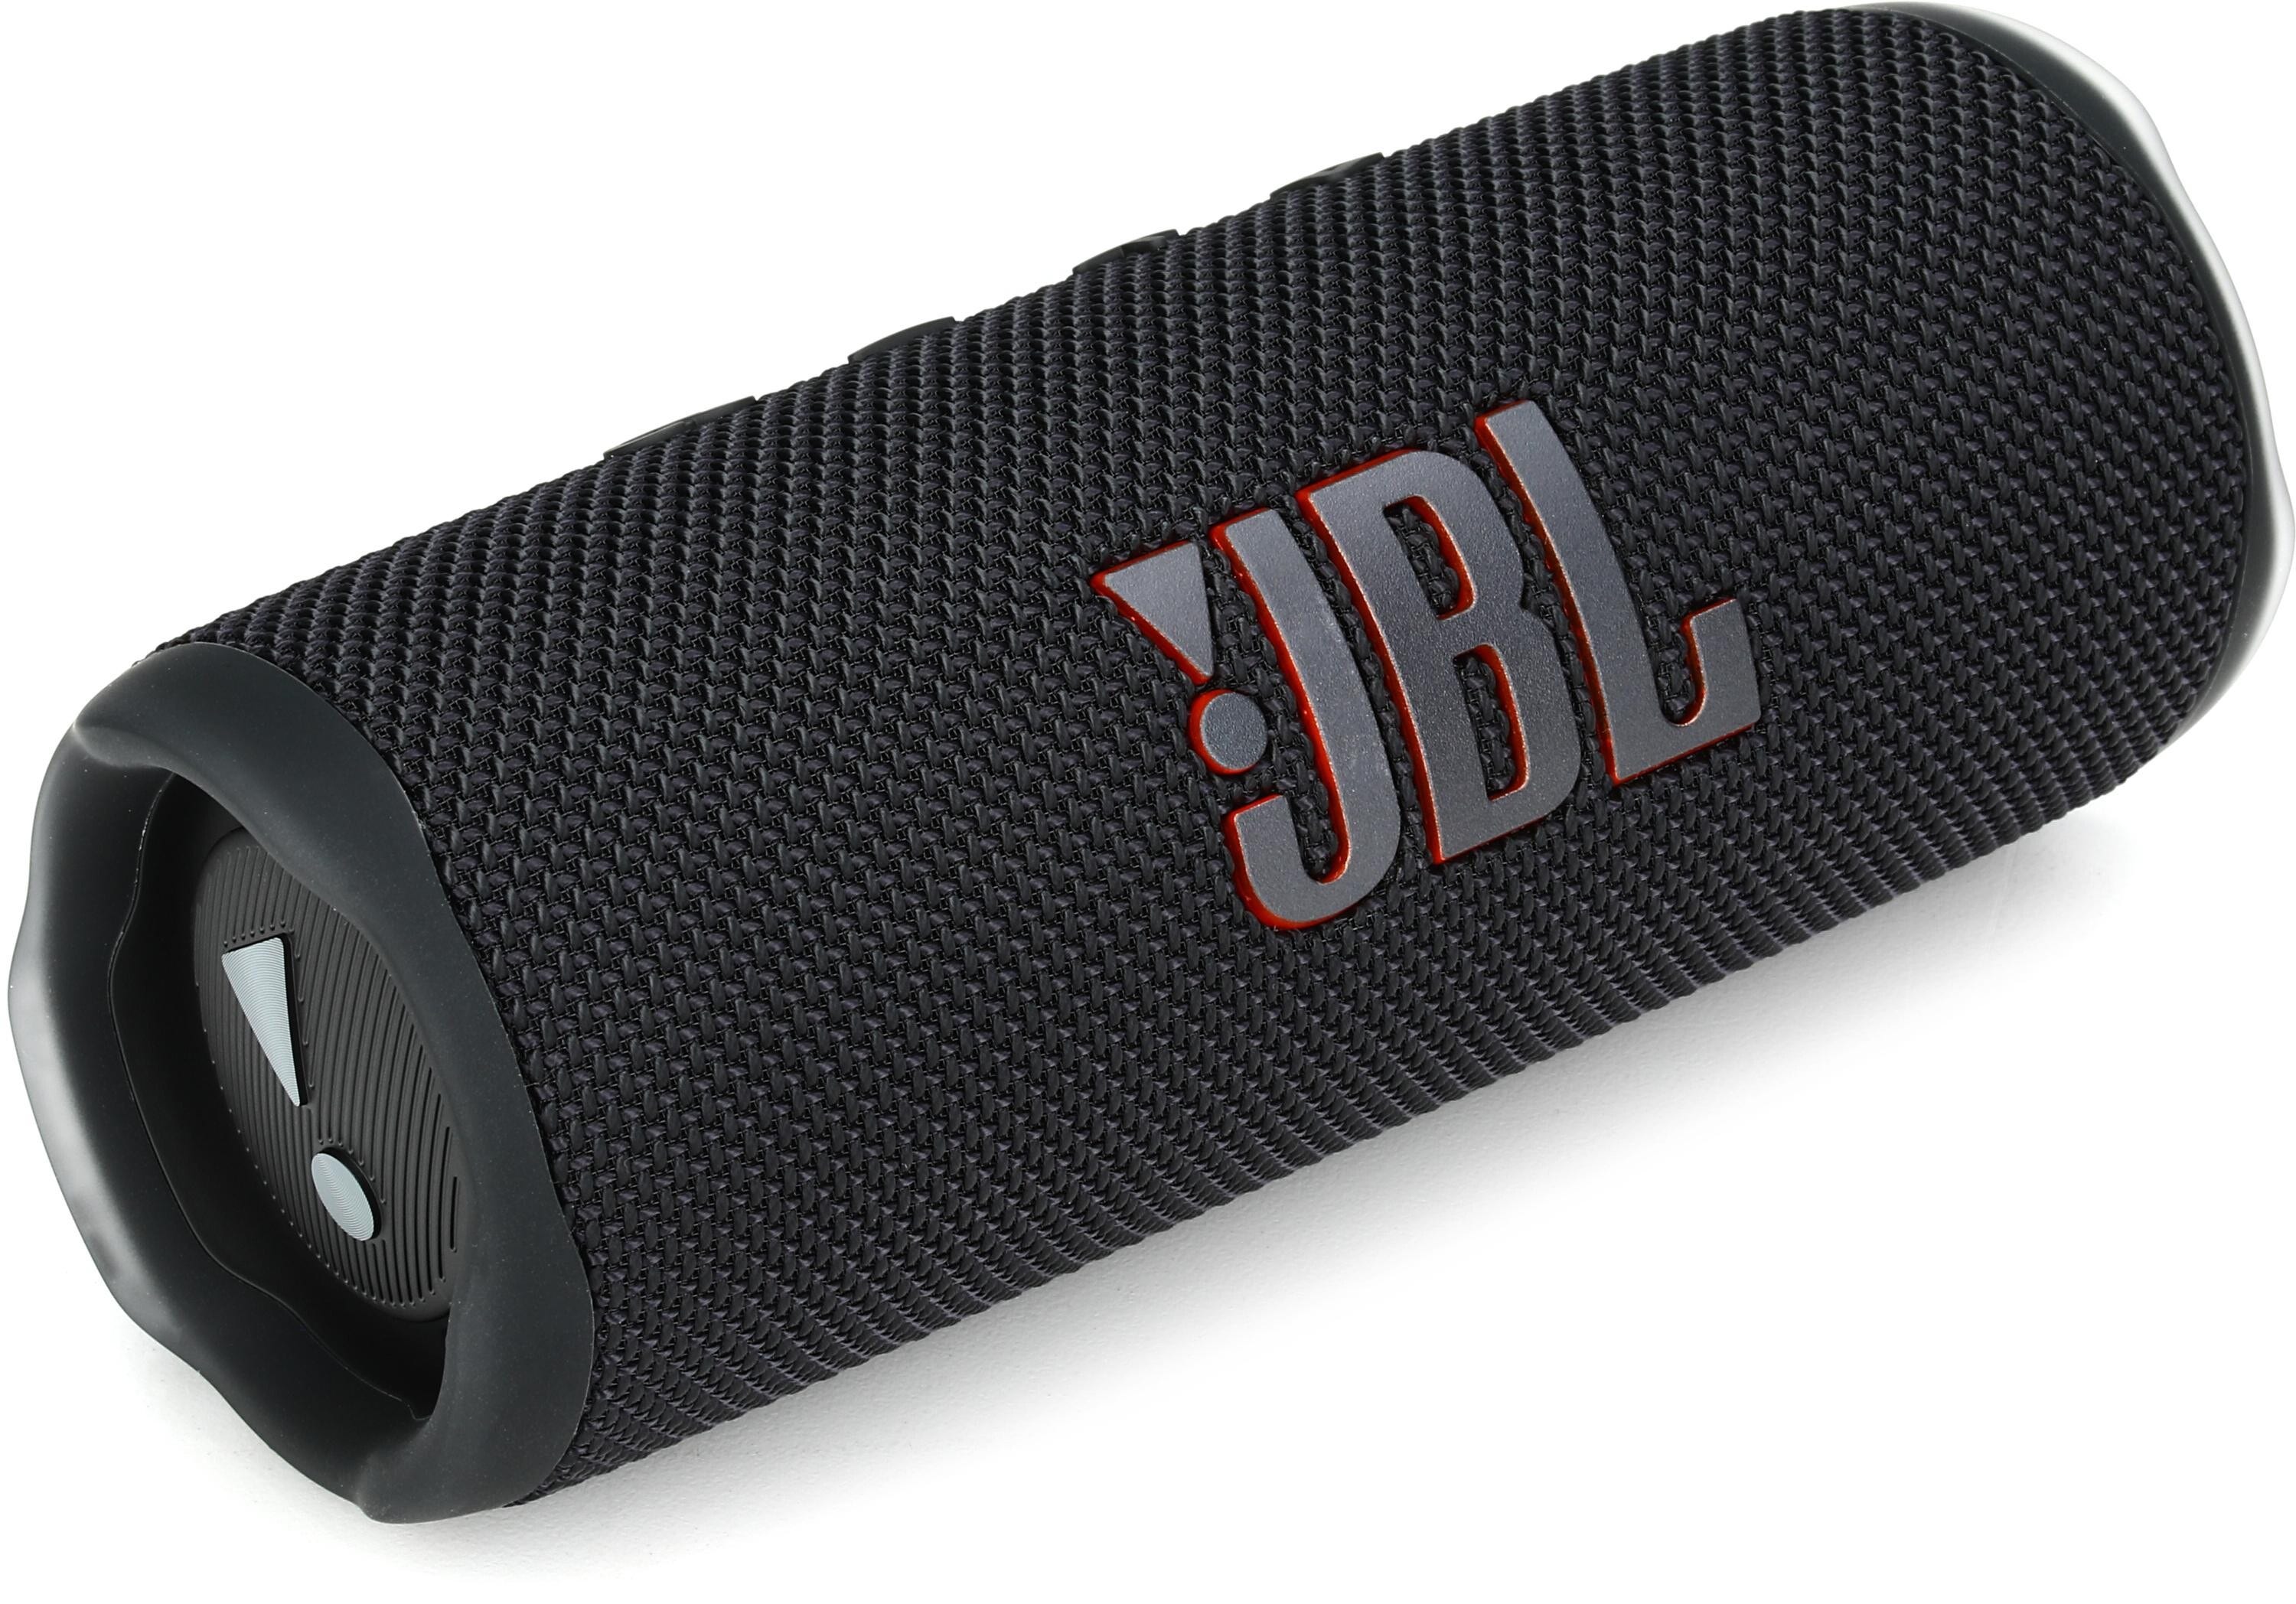 JBL FLIP6 Portable Waterproof Speaker Black JBLFLIP6BLKAM - Best Buy